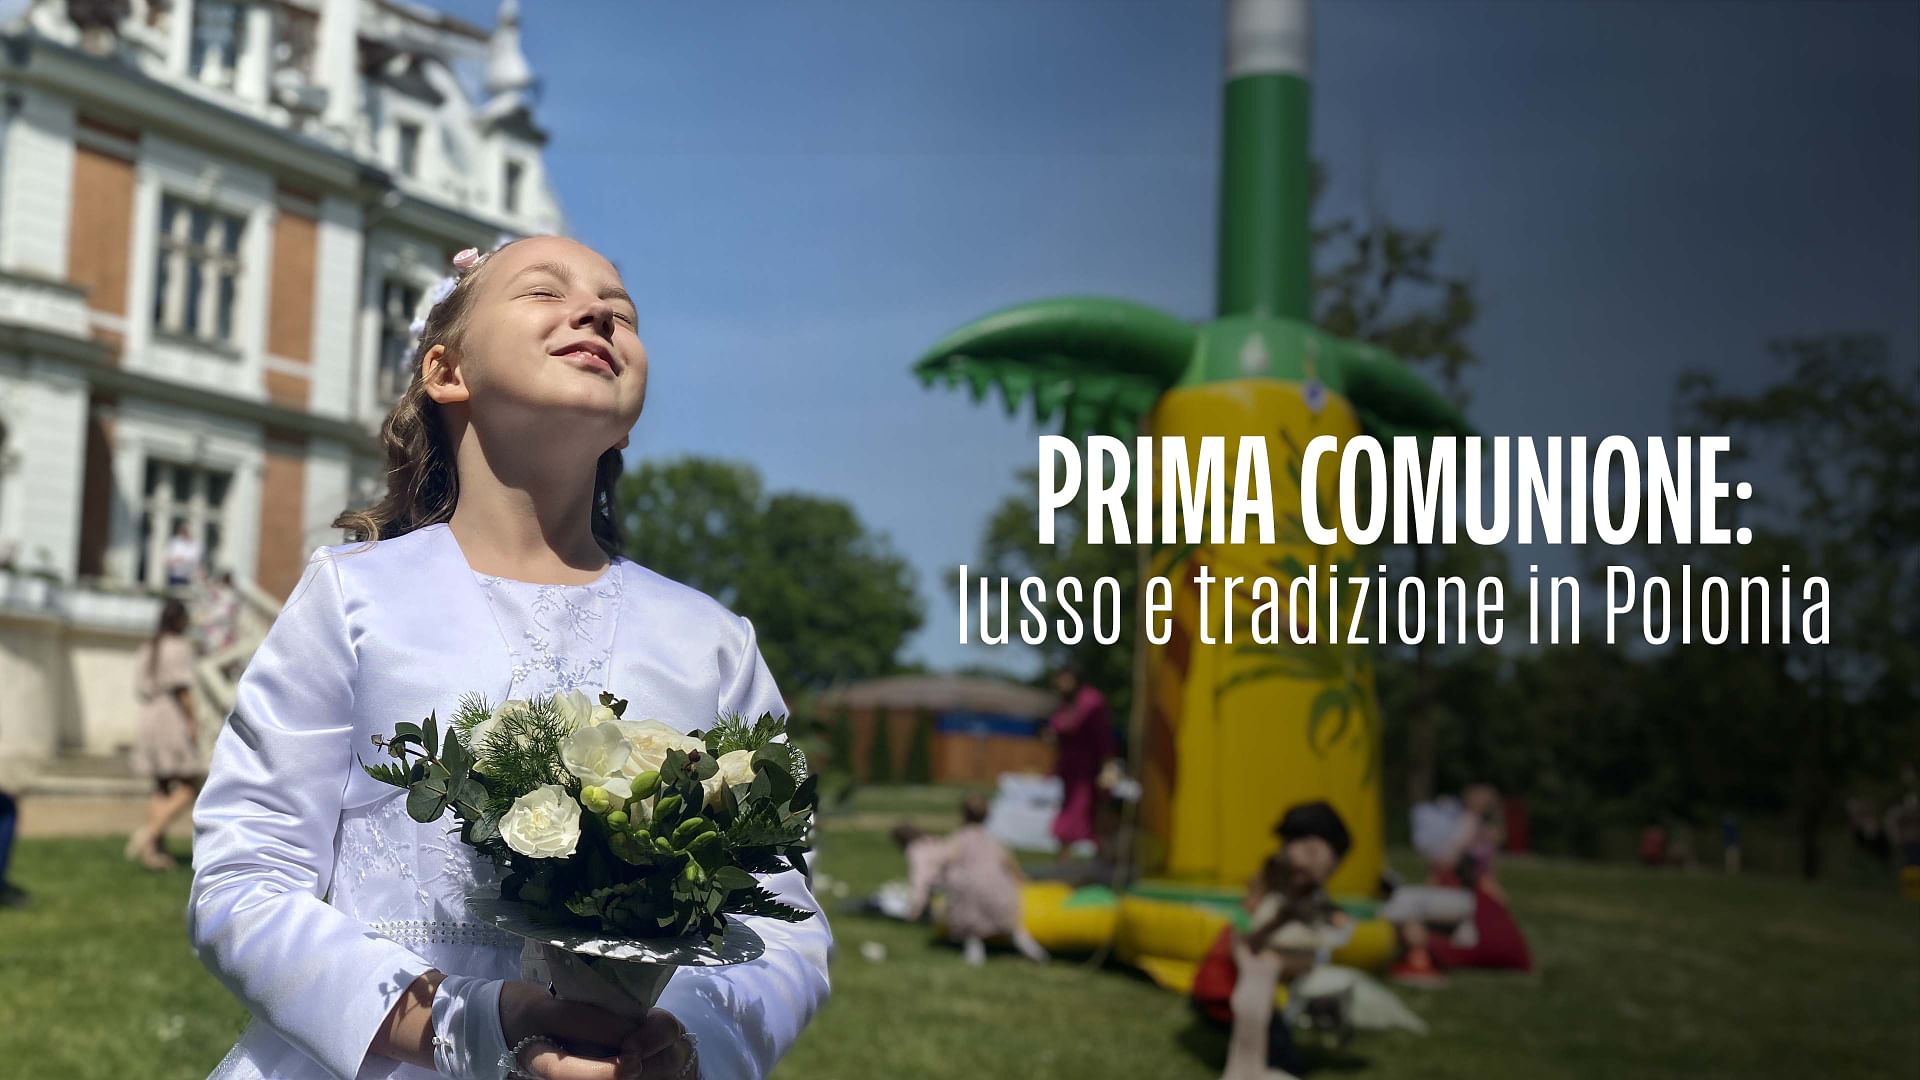 Re: sguardi sulla società - Prime comunioni in Polonia